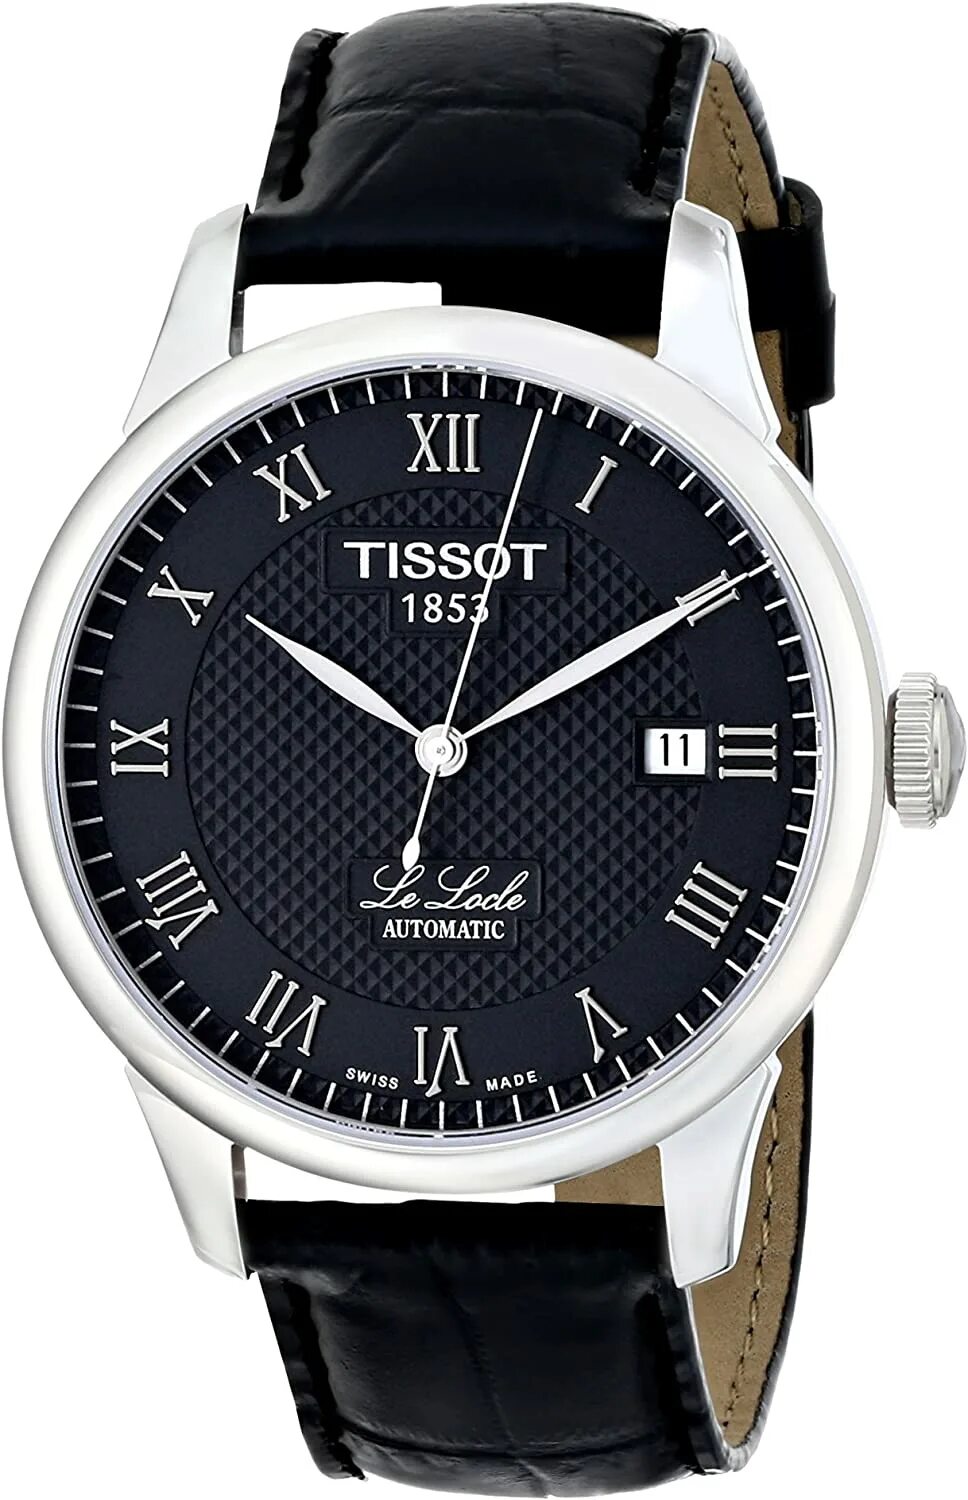 Наручные часы Tissot t41.1.423.53. Тиссот автоматик 1853 le Locle. Tissot Classic le Locle Automatic.